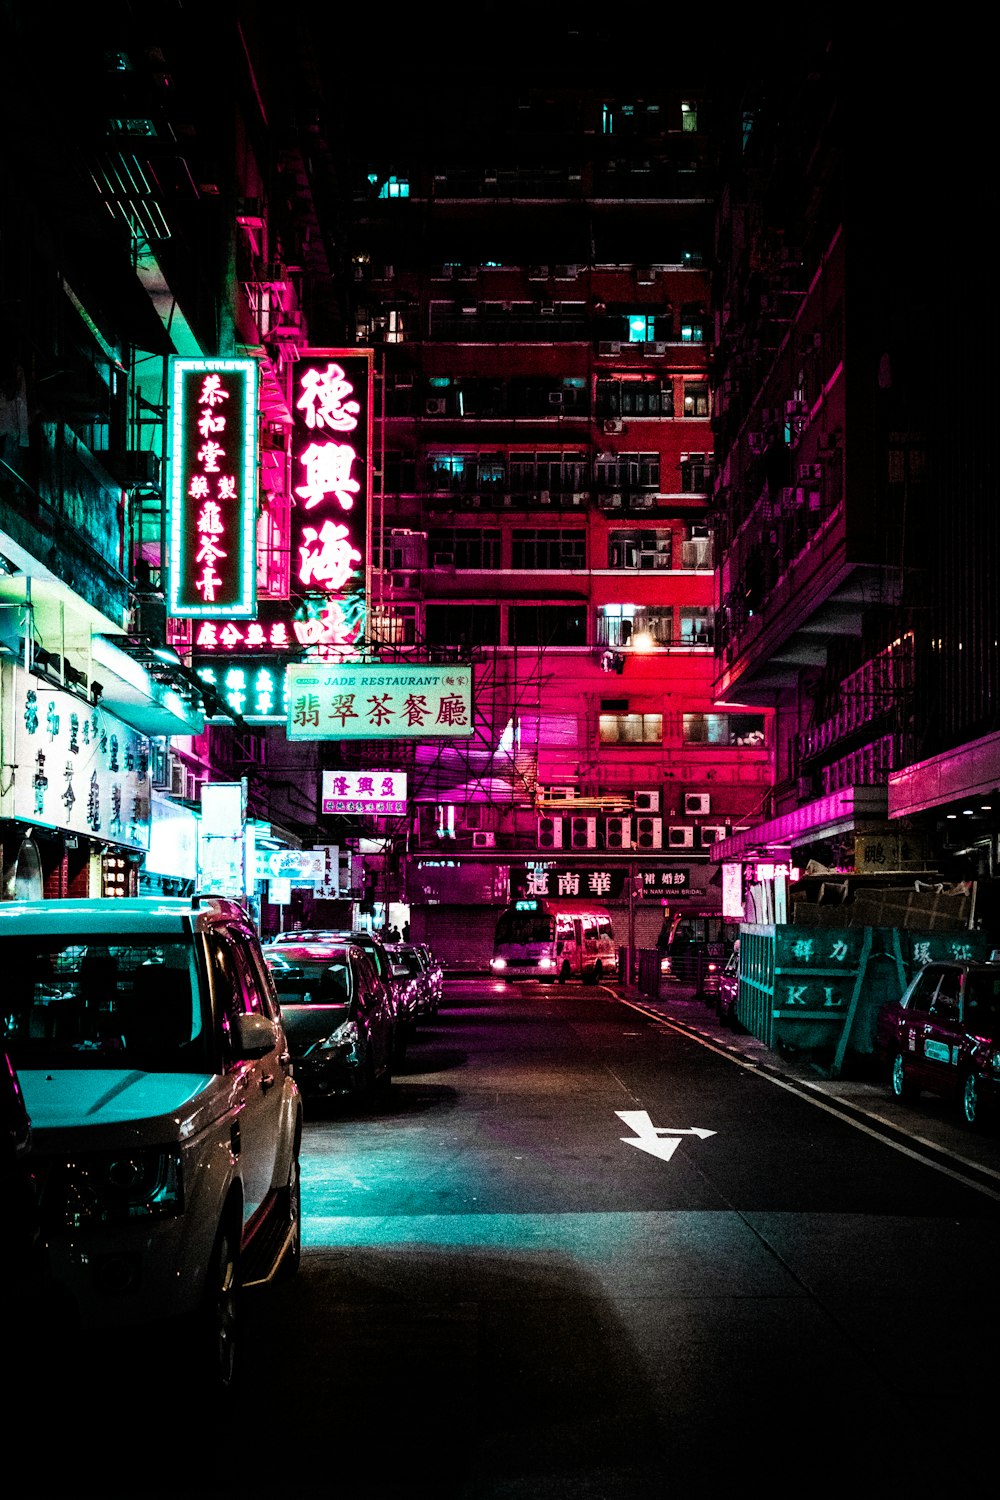 Fahrzeuge parken nachts auf der Fahrbahn zwischen beleuchteten Gebäuden